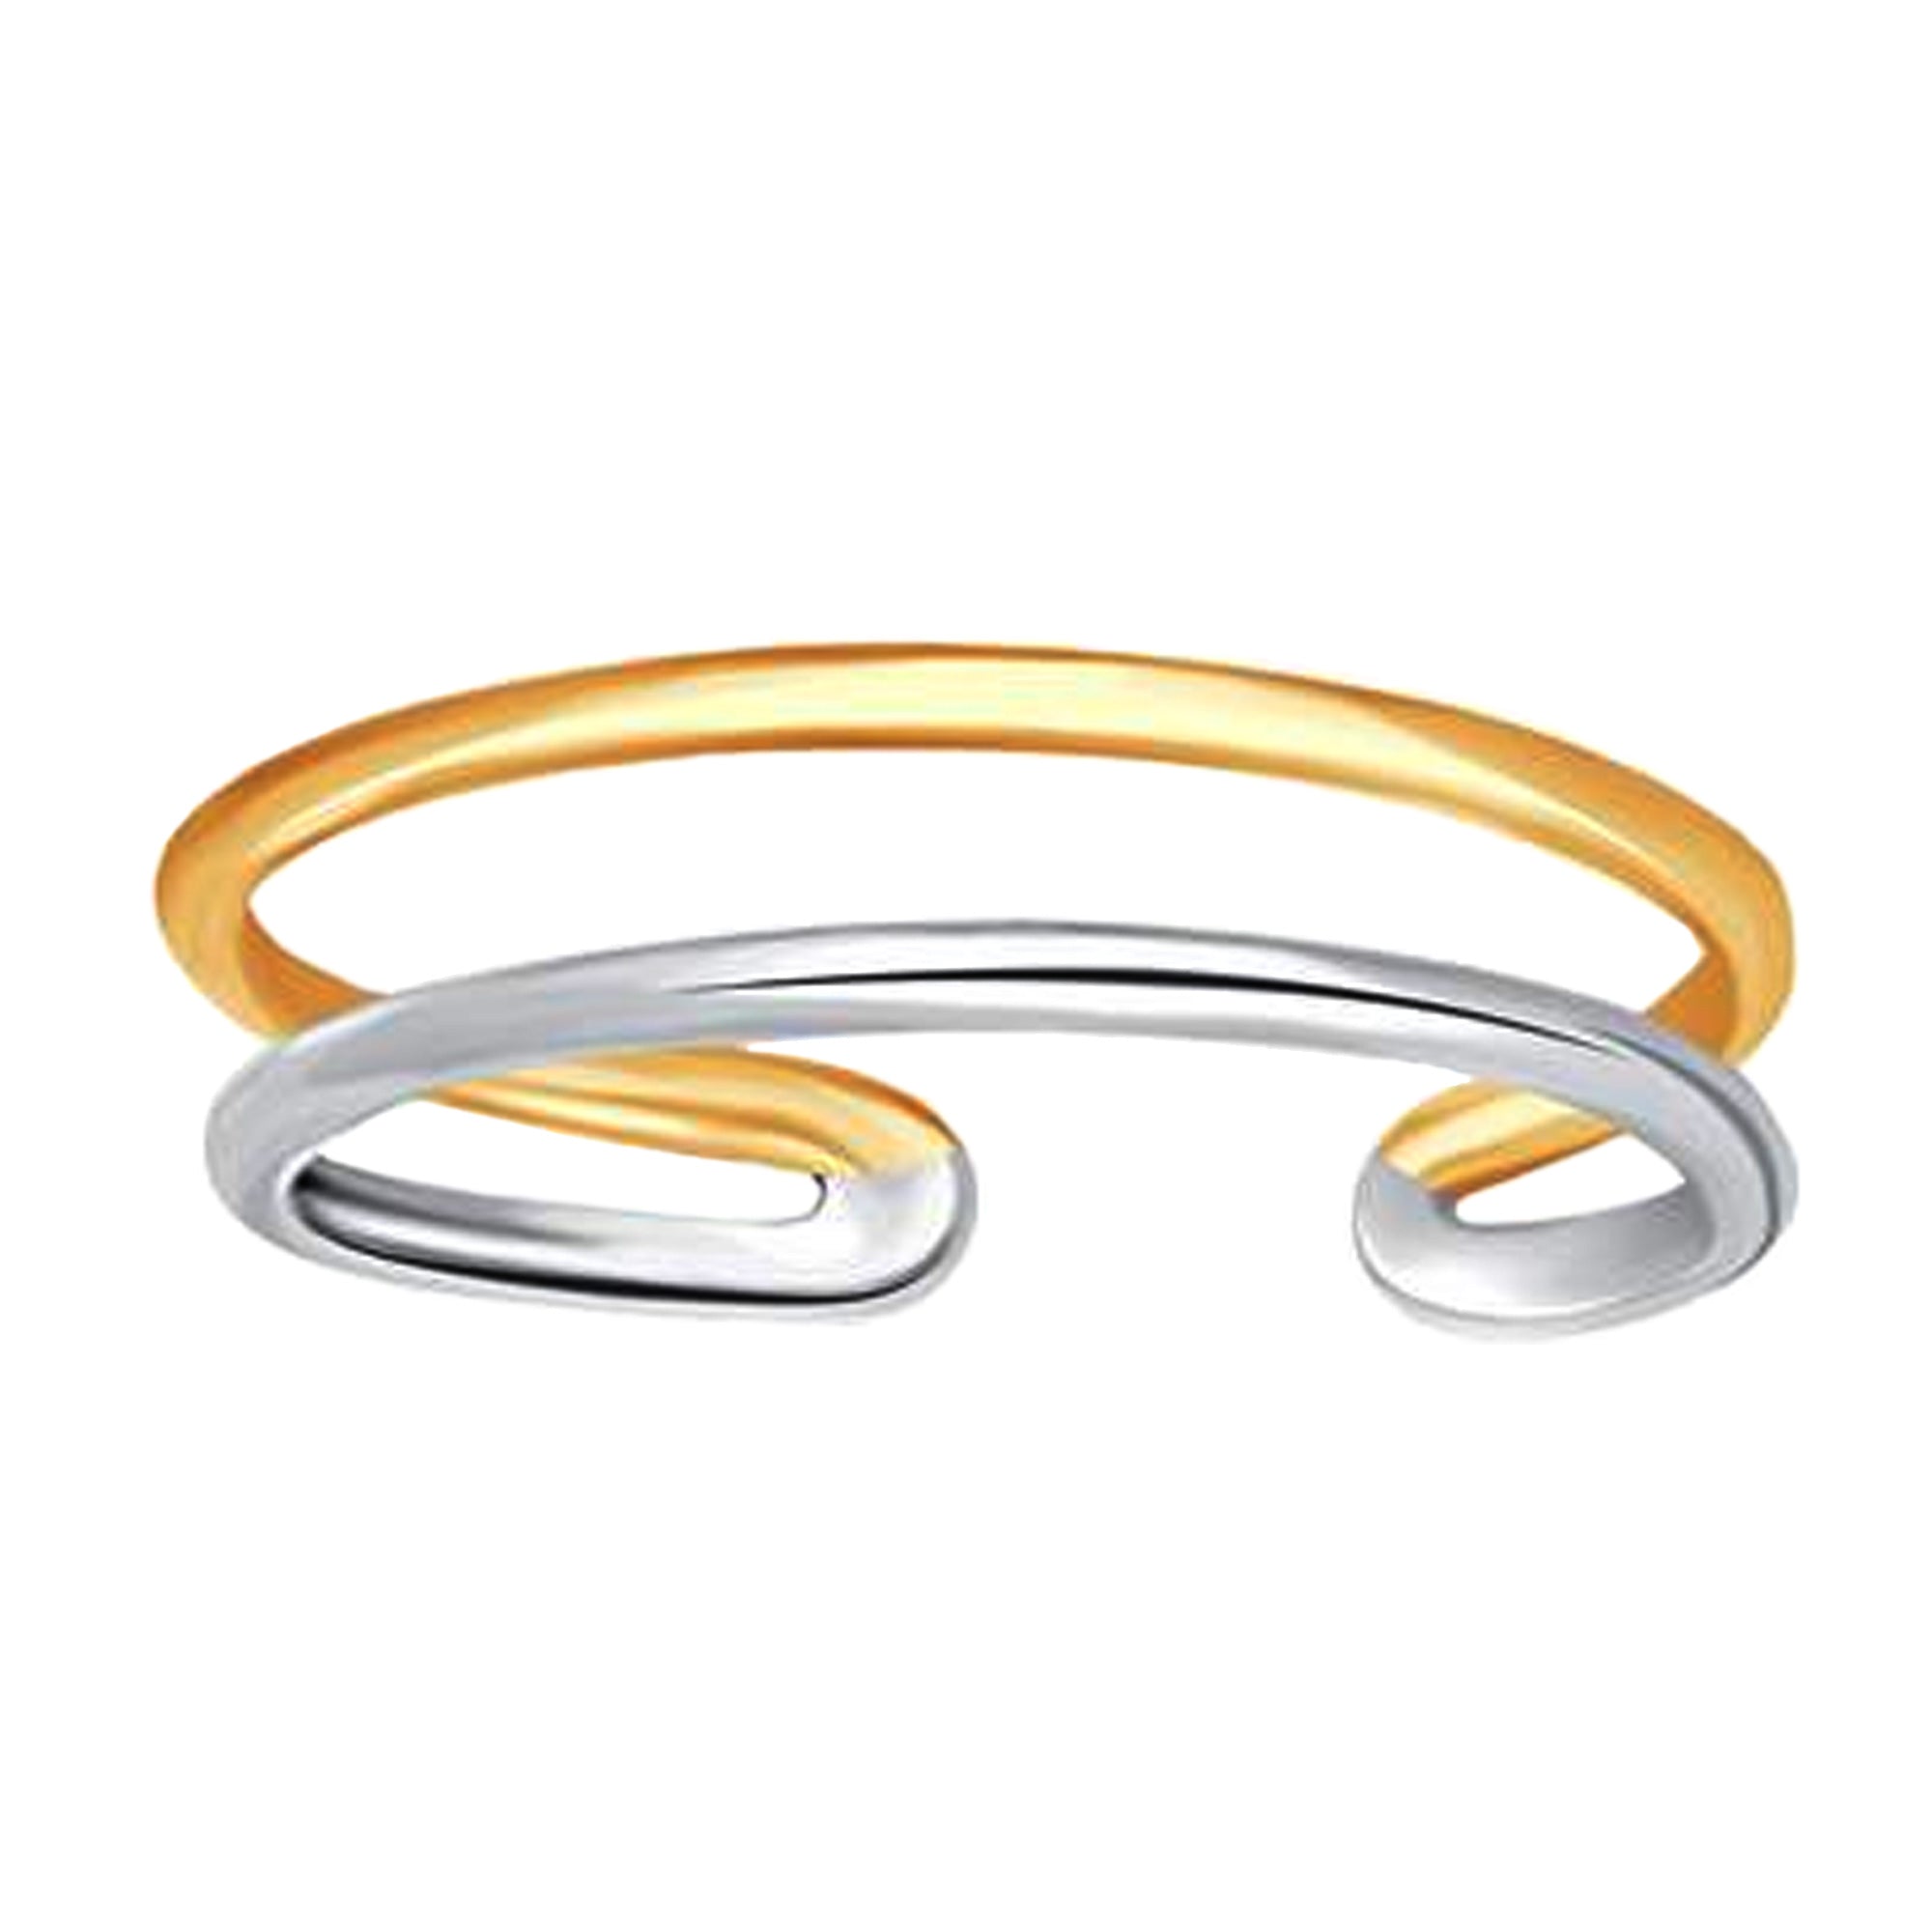 Anello da punta regolabile in oro bianco e giallo 14 carati con polsino a doppia barra, gioielli di design per uomini e donne